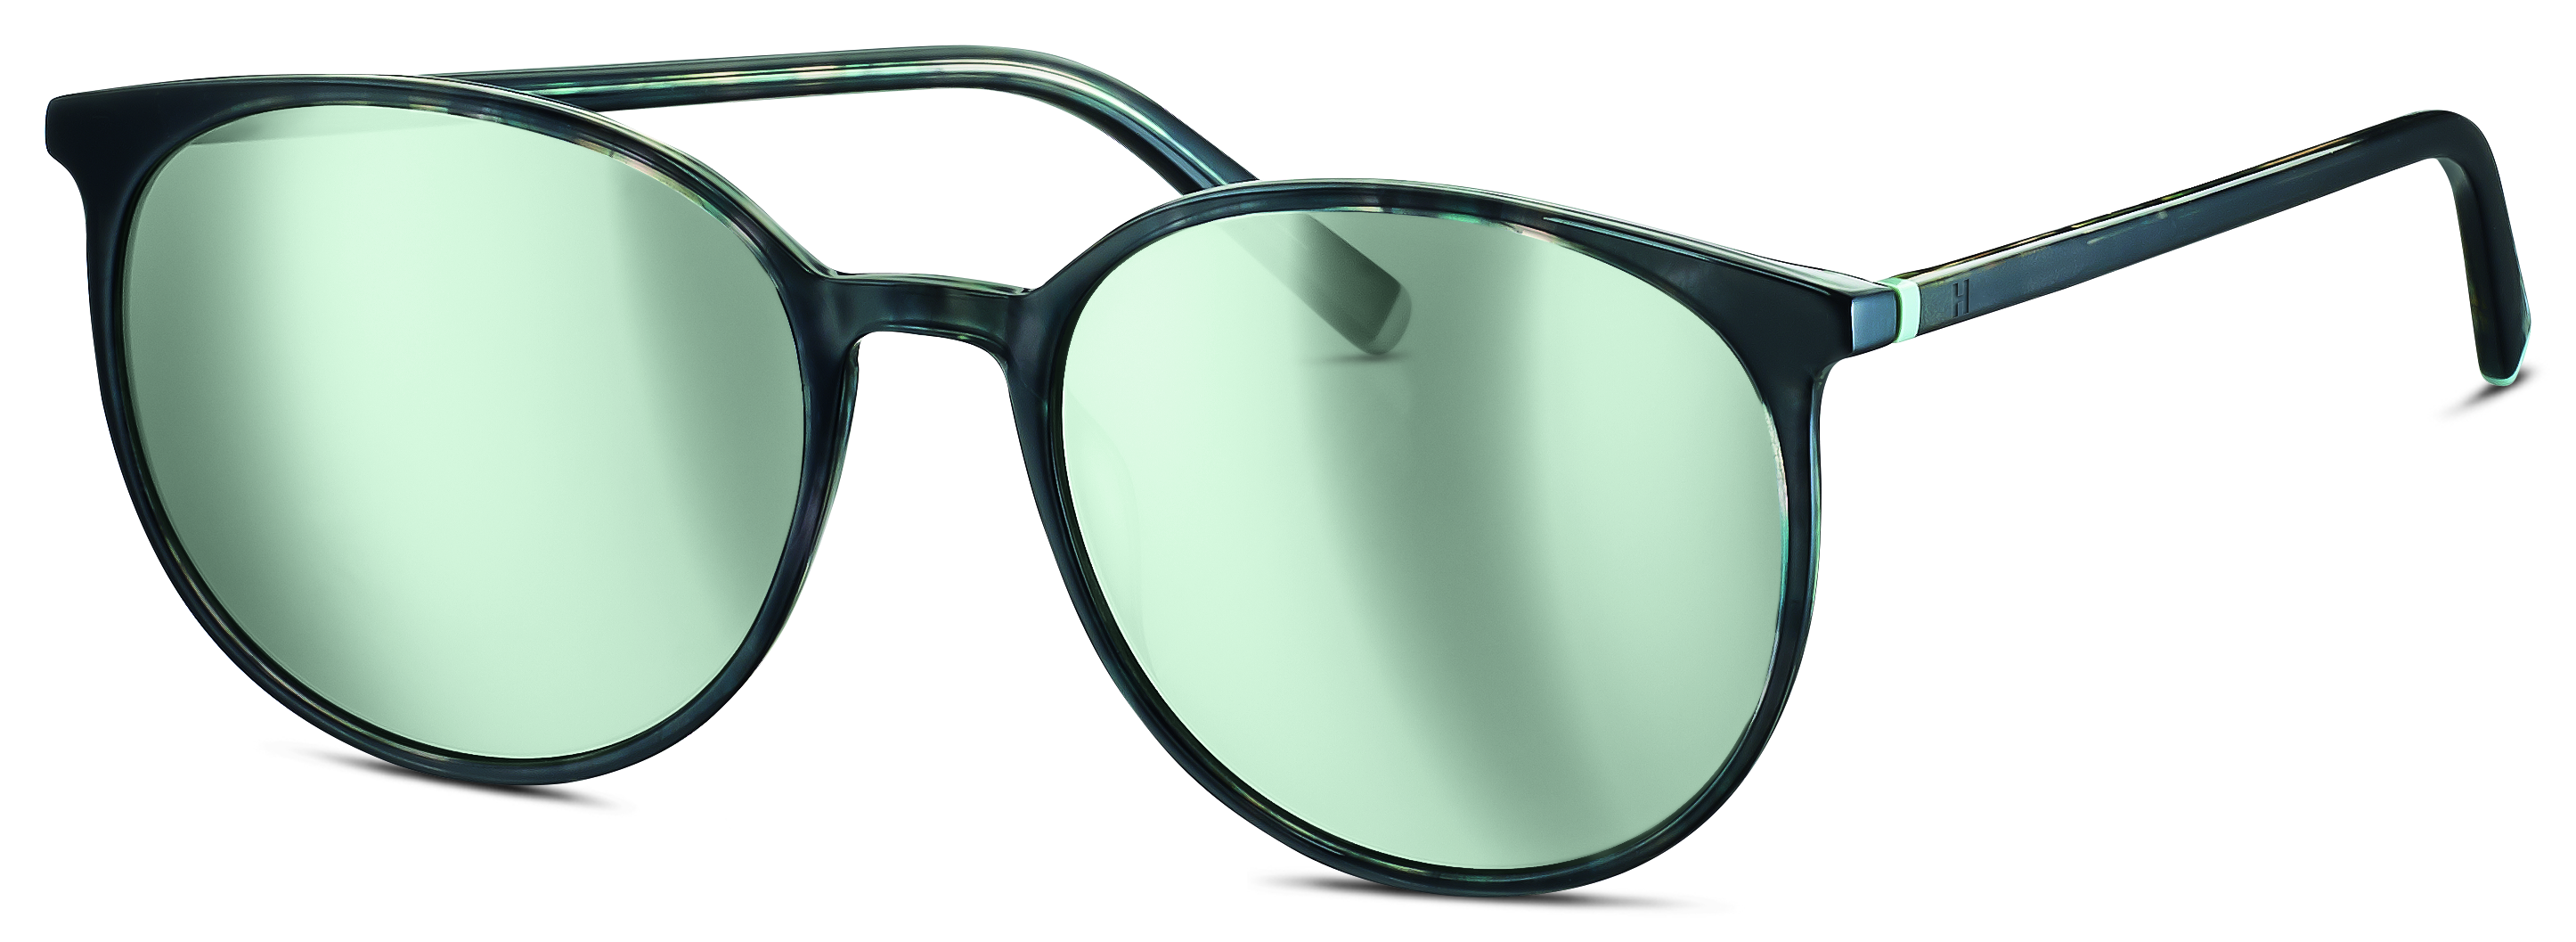 Das Bild zeigt die Sonnenbrille 588151 40 von der Marke Humphreys in grün.